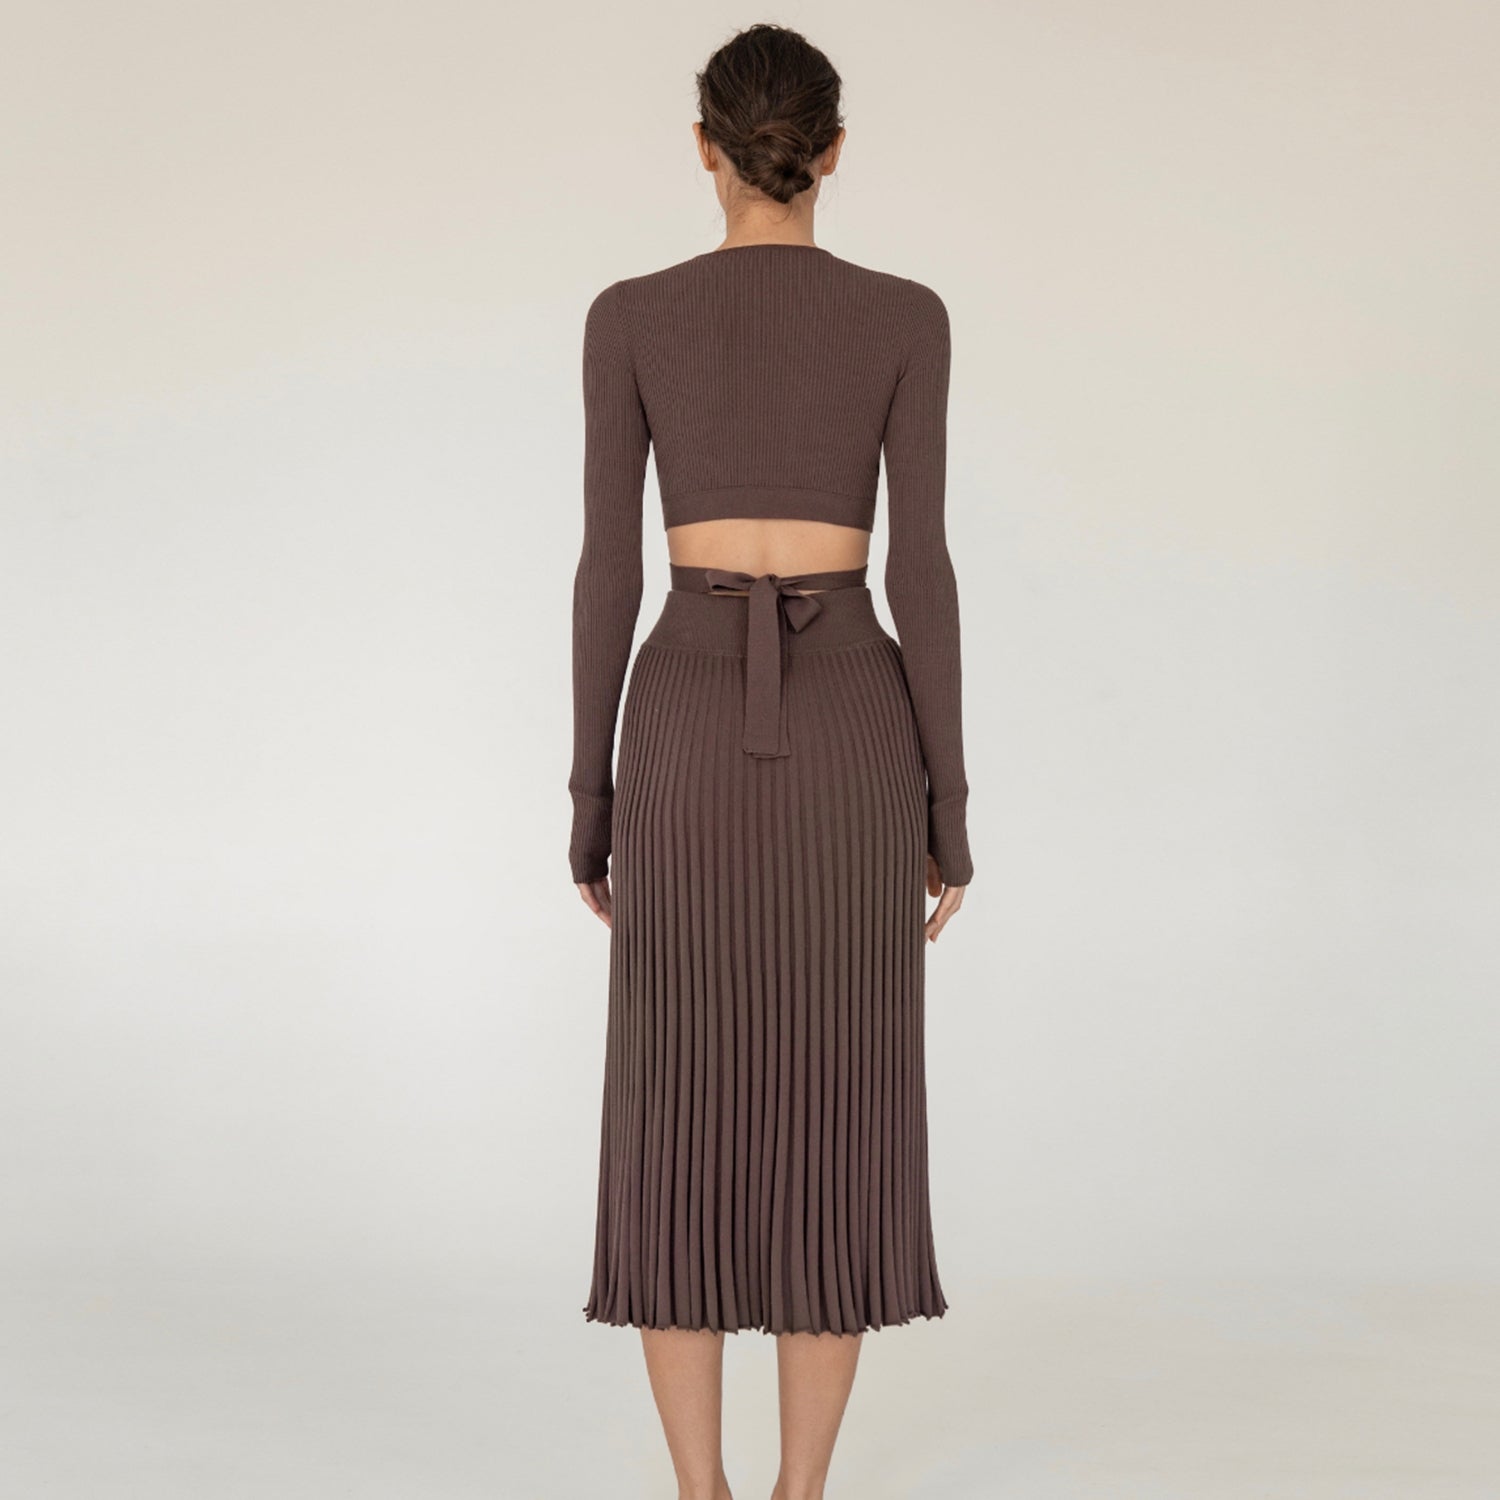 JOANNA Knitting Pleated Skirt & Crop Top Set - Veloristore